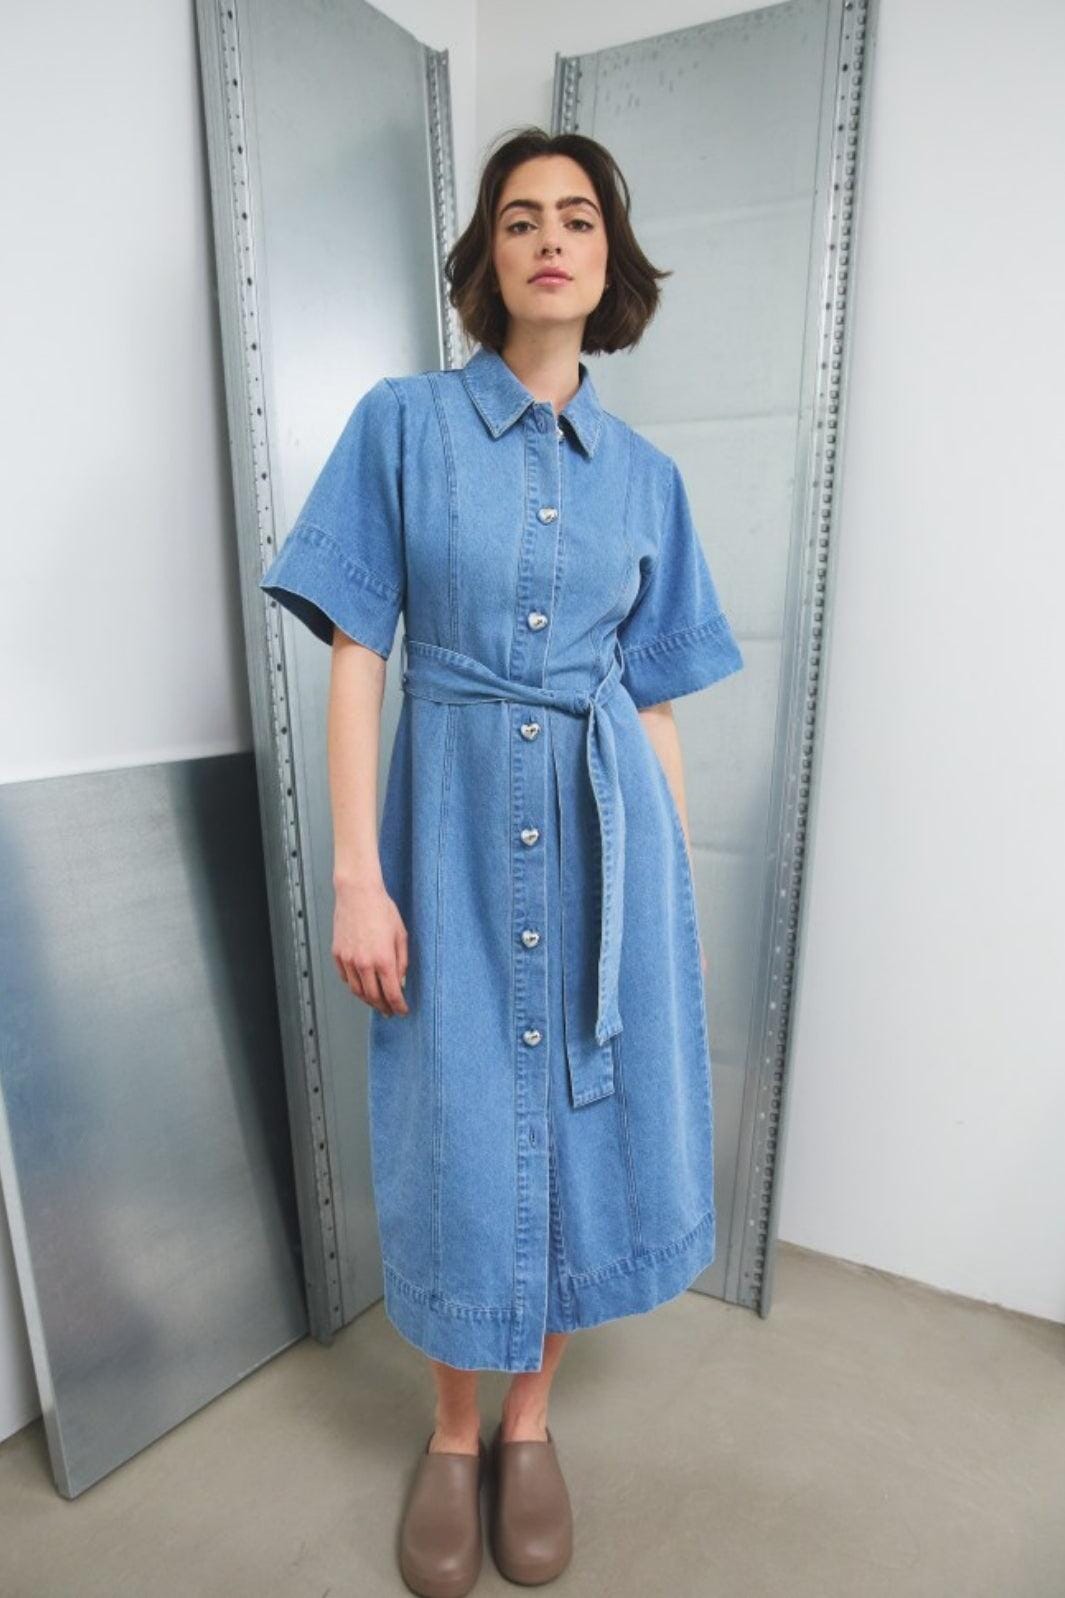 Noella - Keisley Dress - 1235 Light Blue Wash Kjoler 